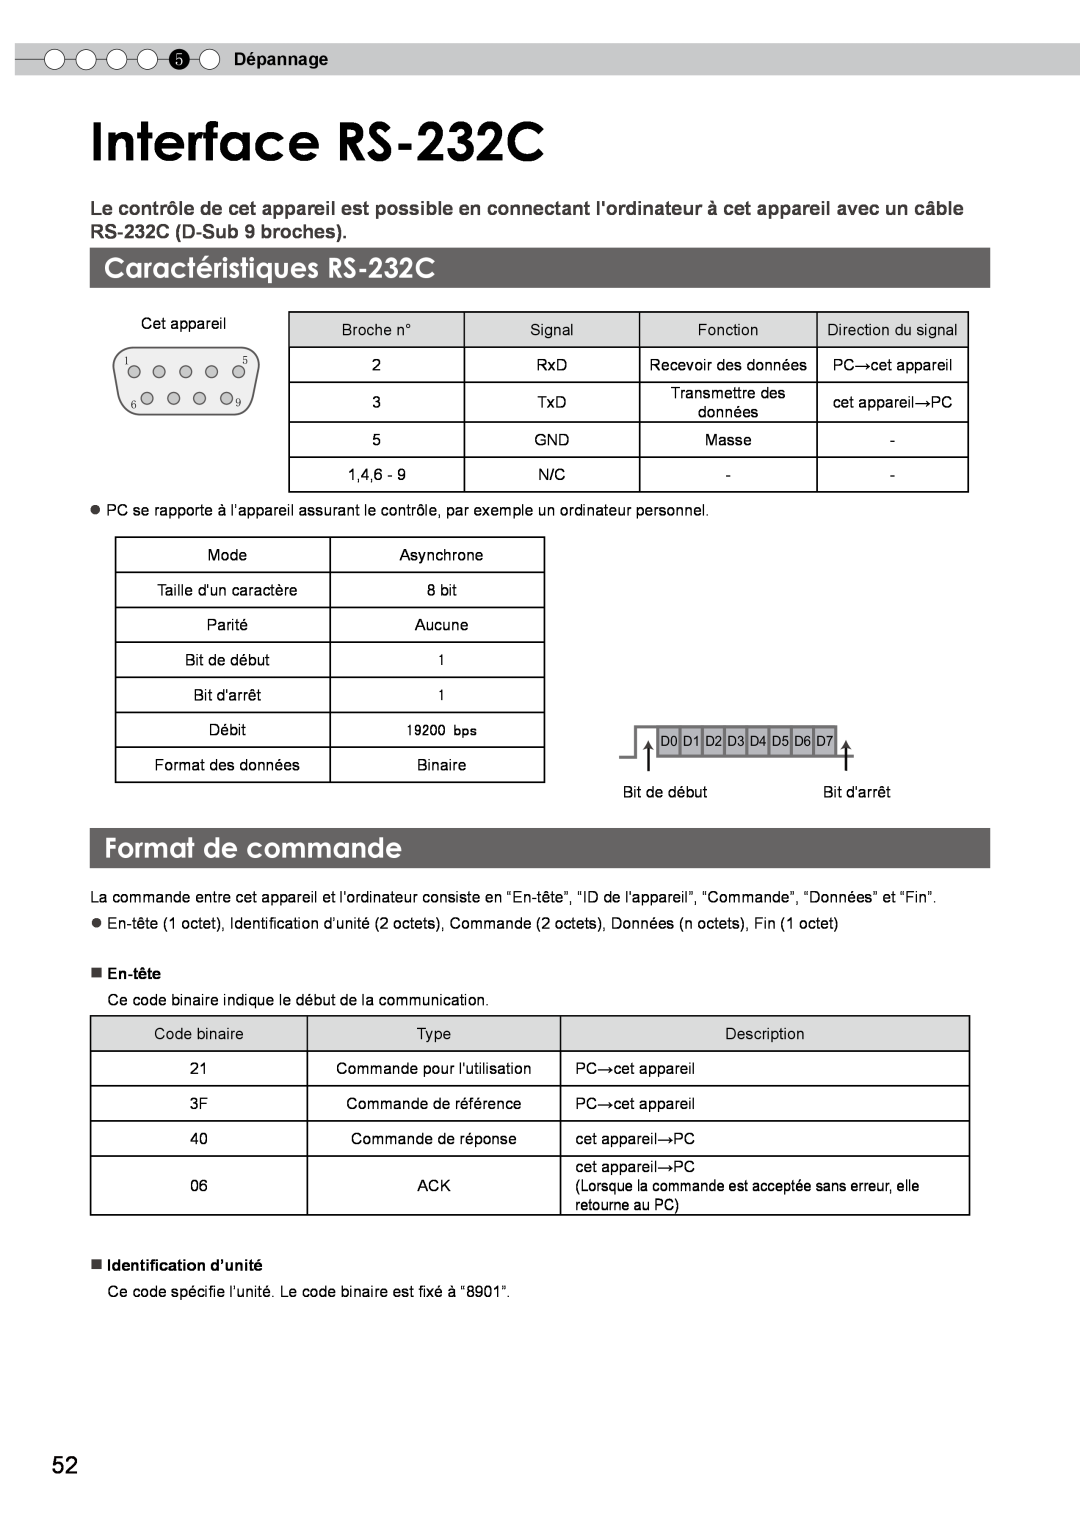 JVC PB006596599-0 manual Interface RS-232C, Caractéristiques RS-232C, Format de commande, 5 Dépannage 